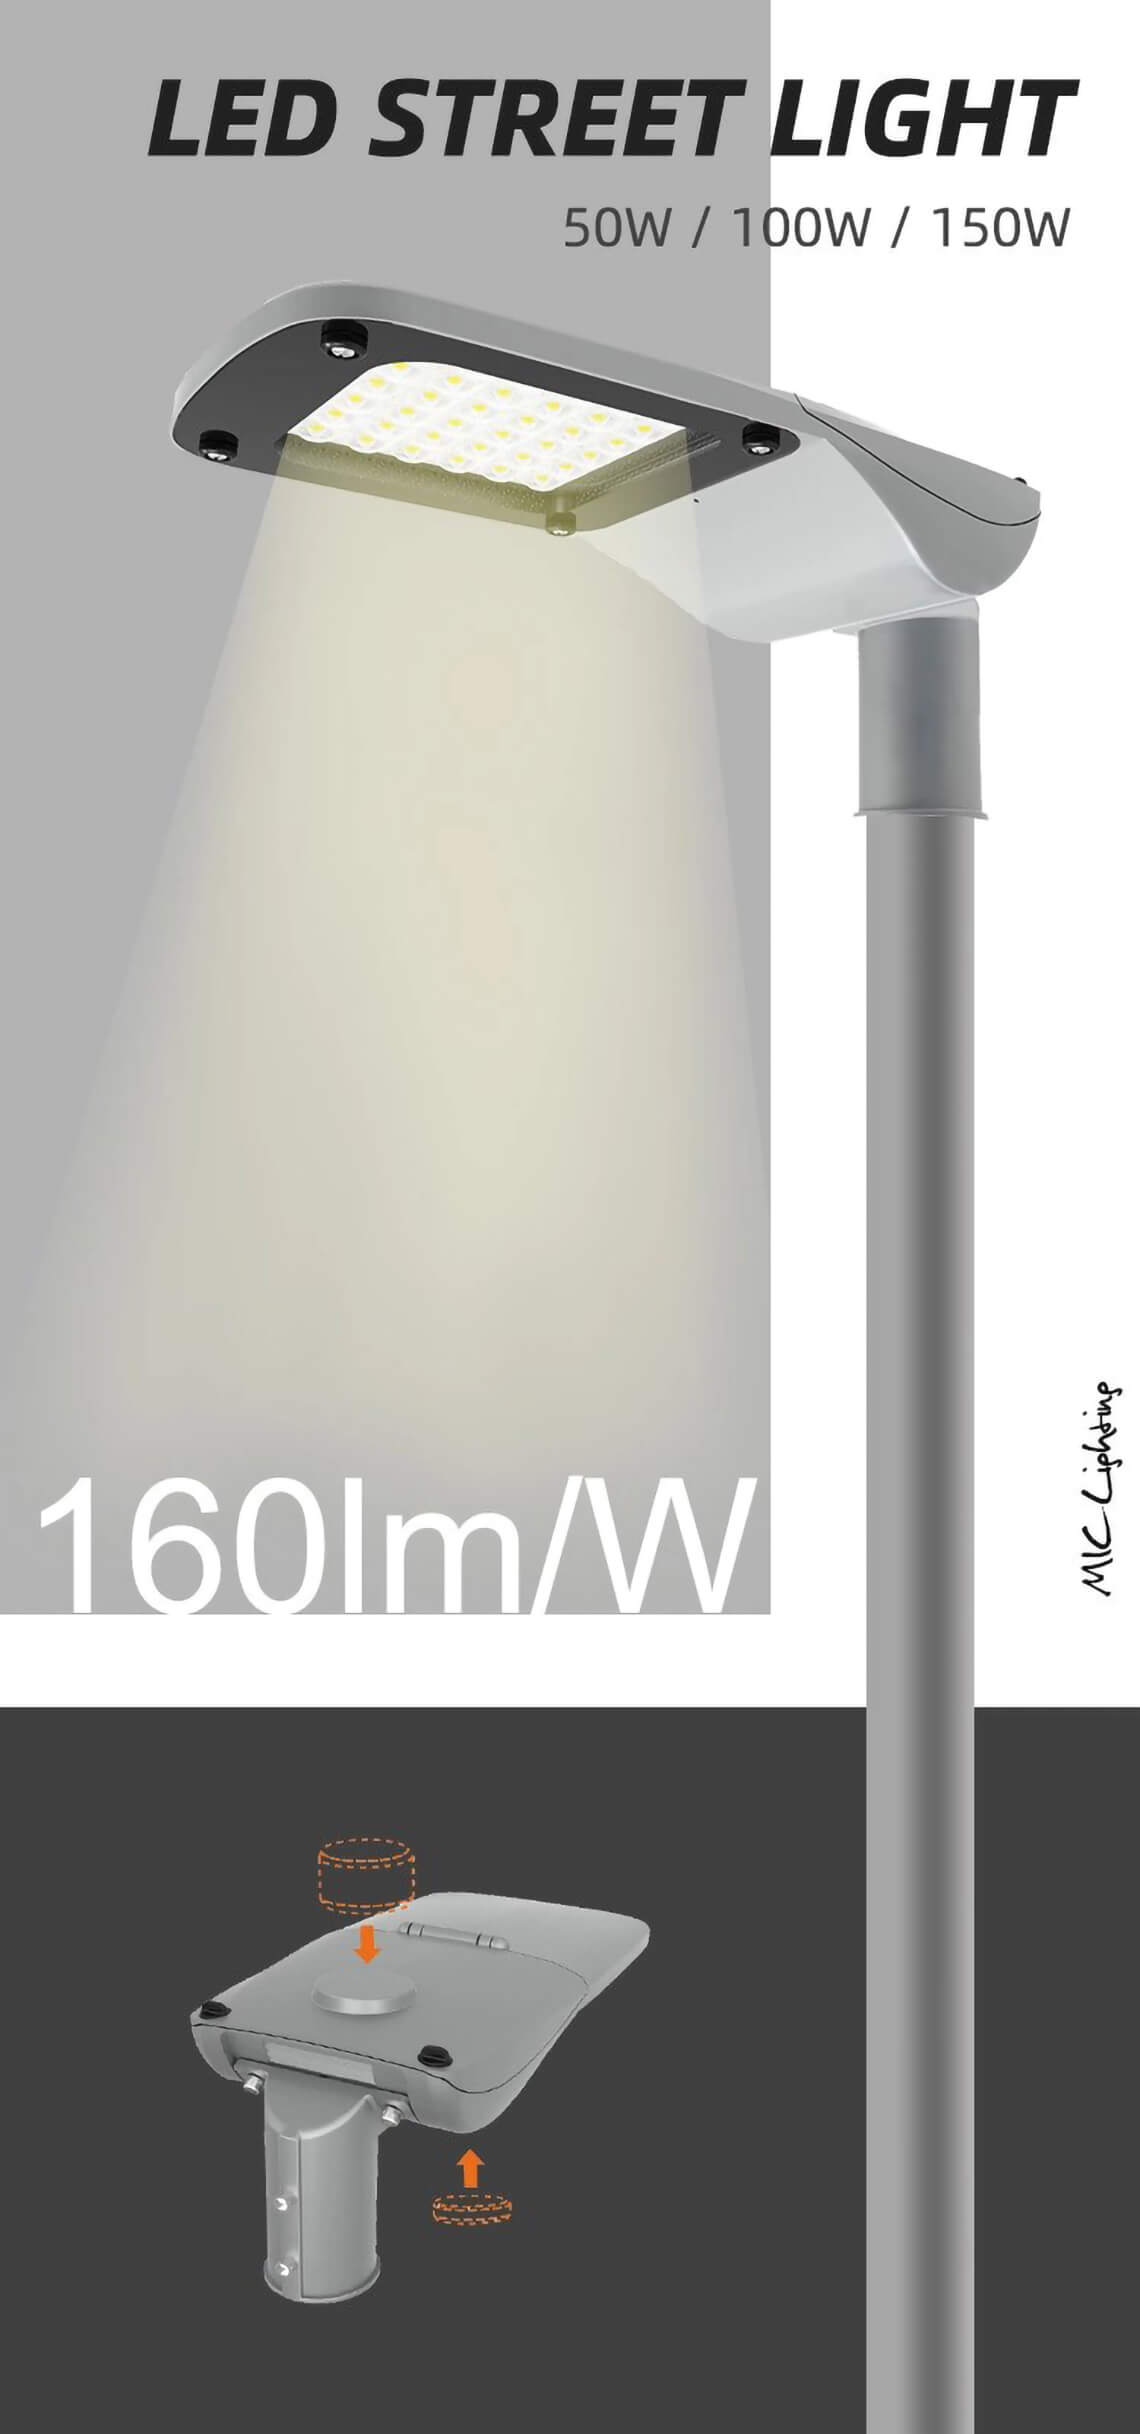 A Series 100w LED